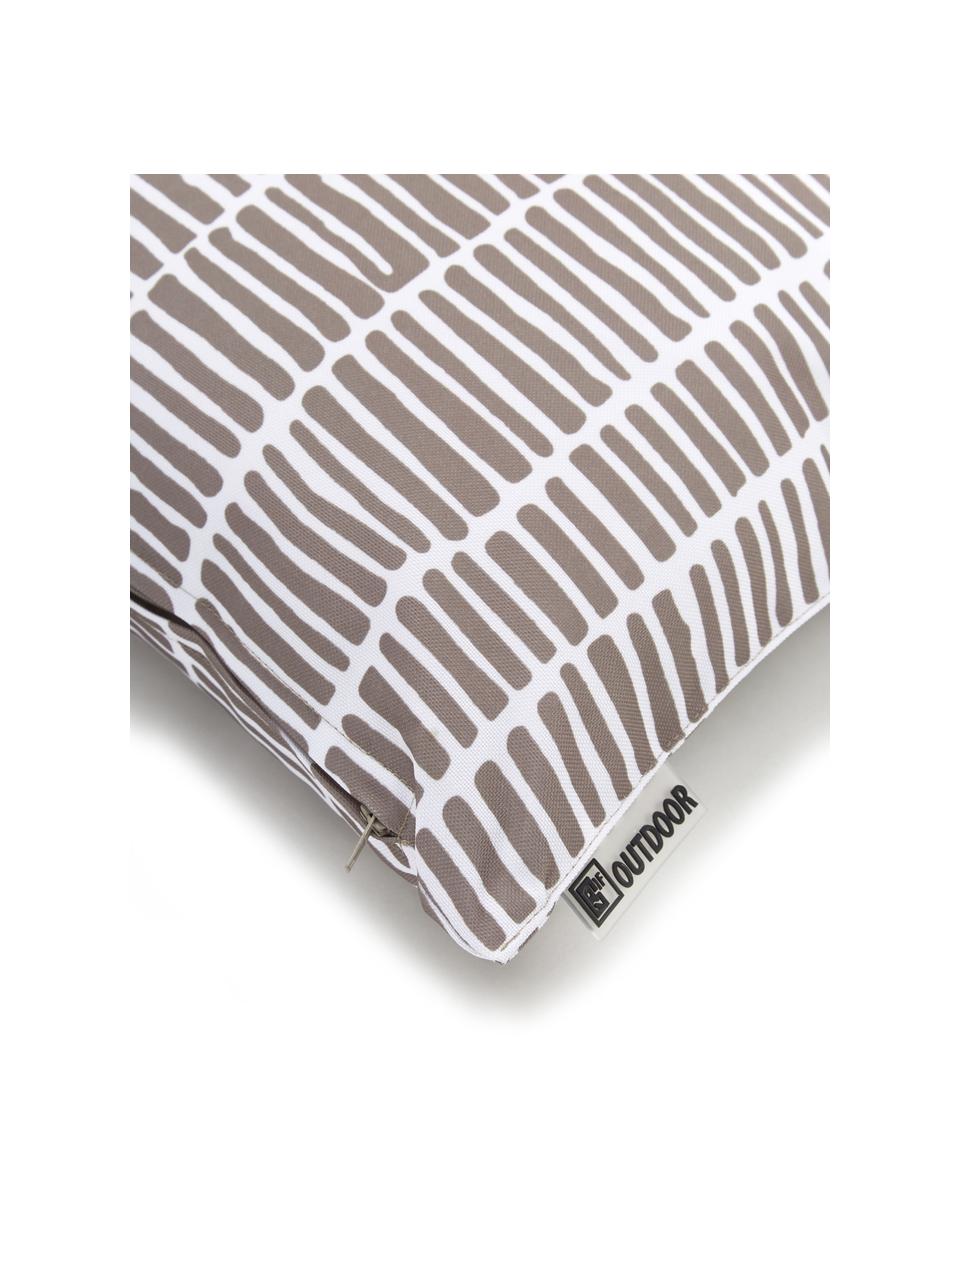 Outdoor-Kissen Little Stripe, mit Inlett, 100% Polyester, Weiss, Taupe, B 47 x L 47 cm